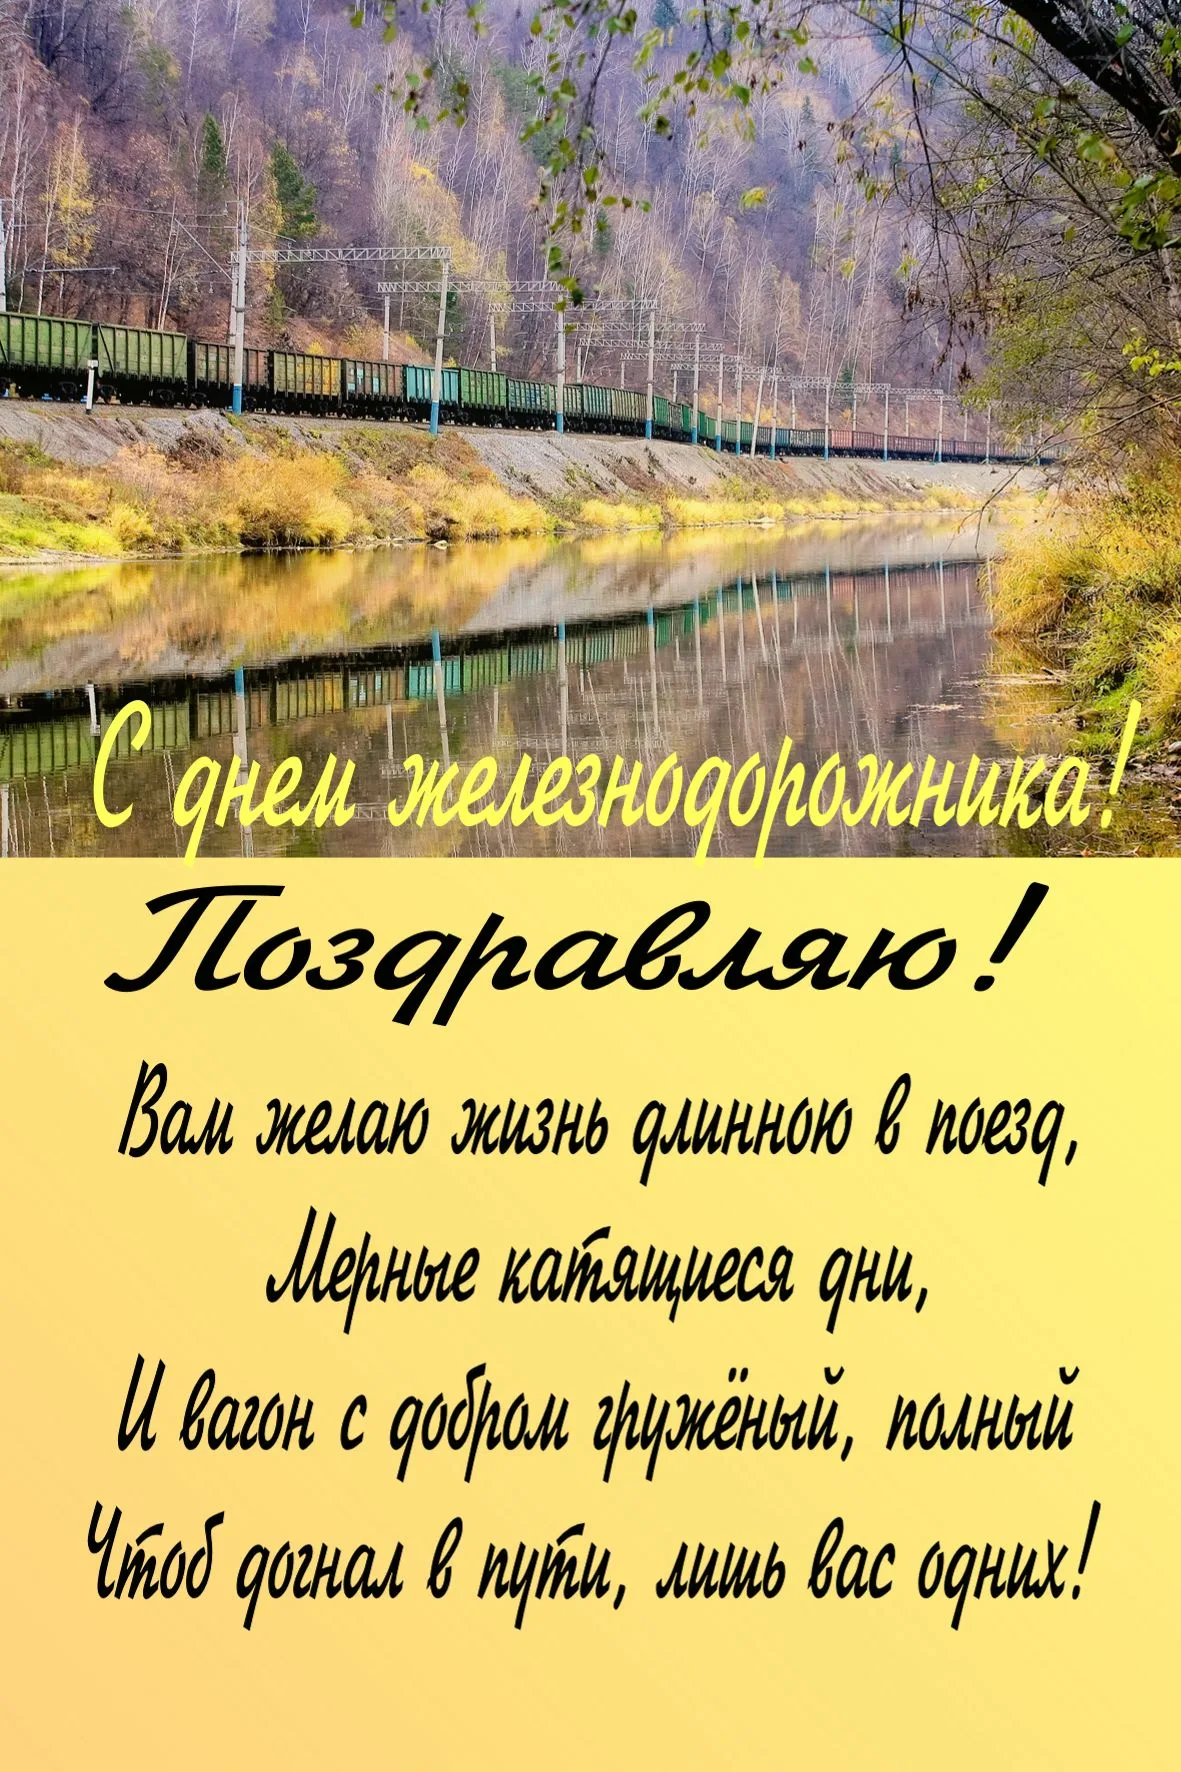 Фото Поздравление с днем железнодорожника Украины #83